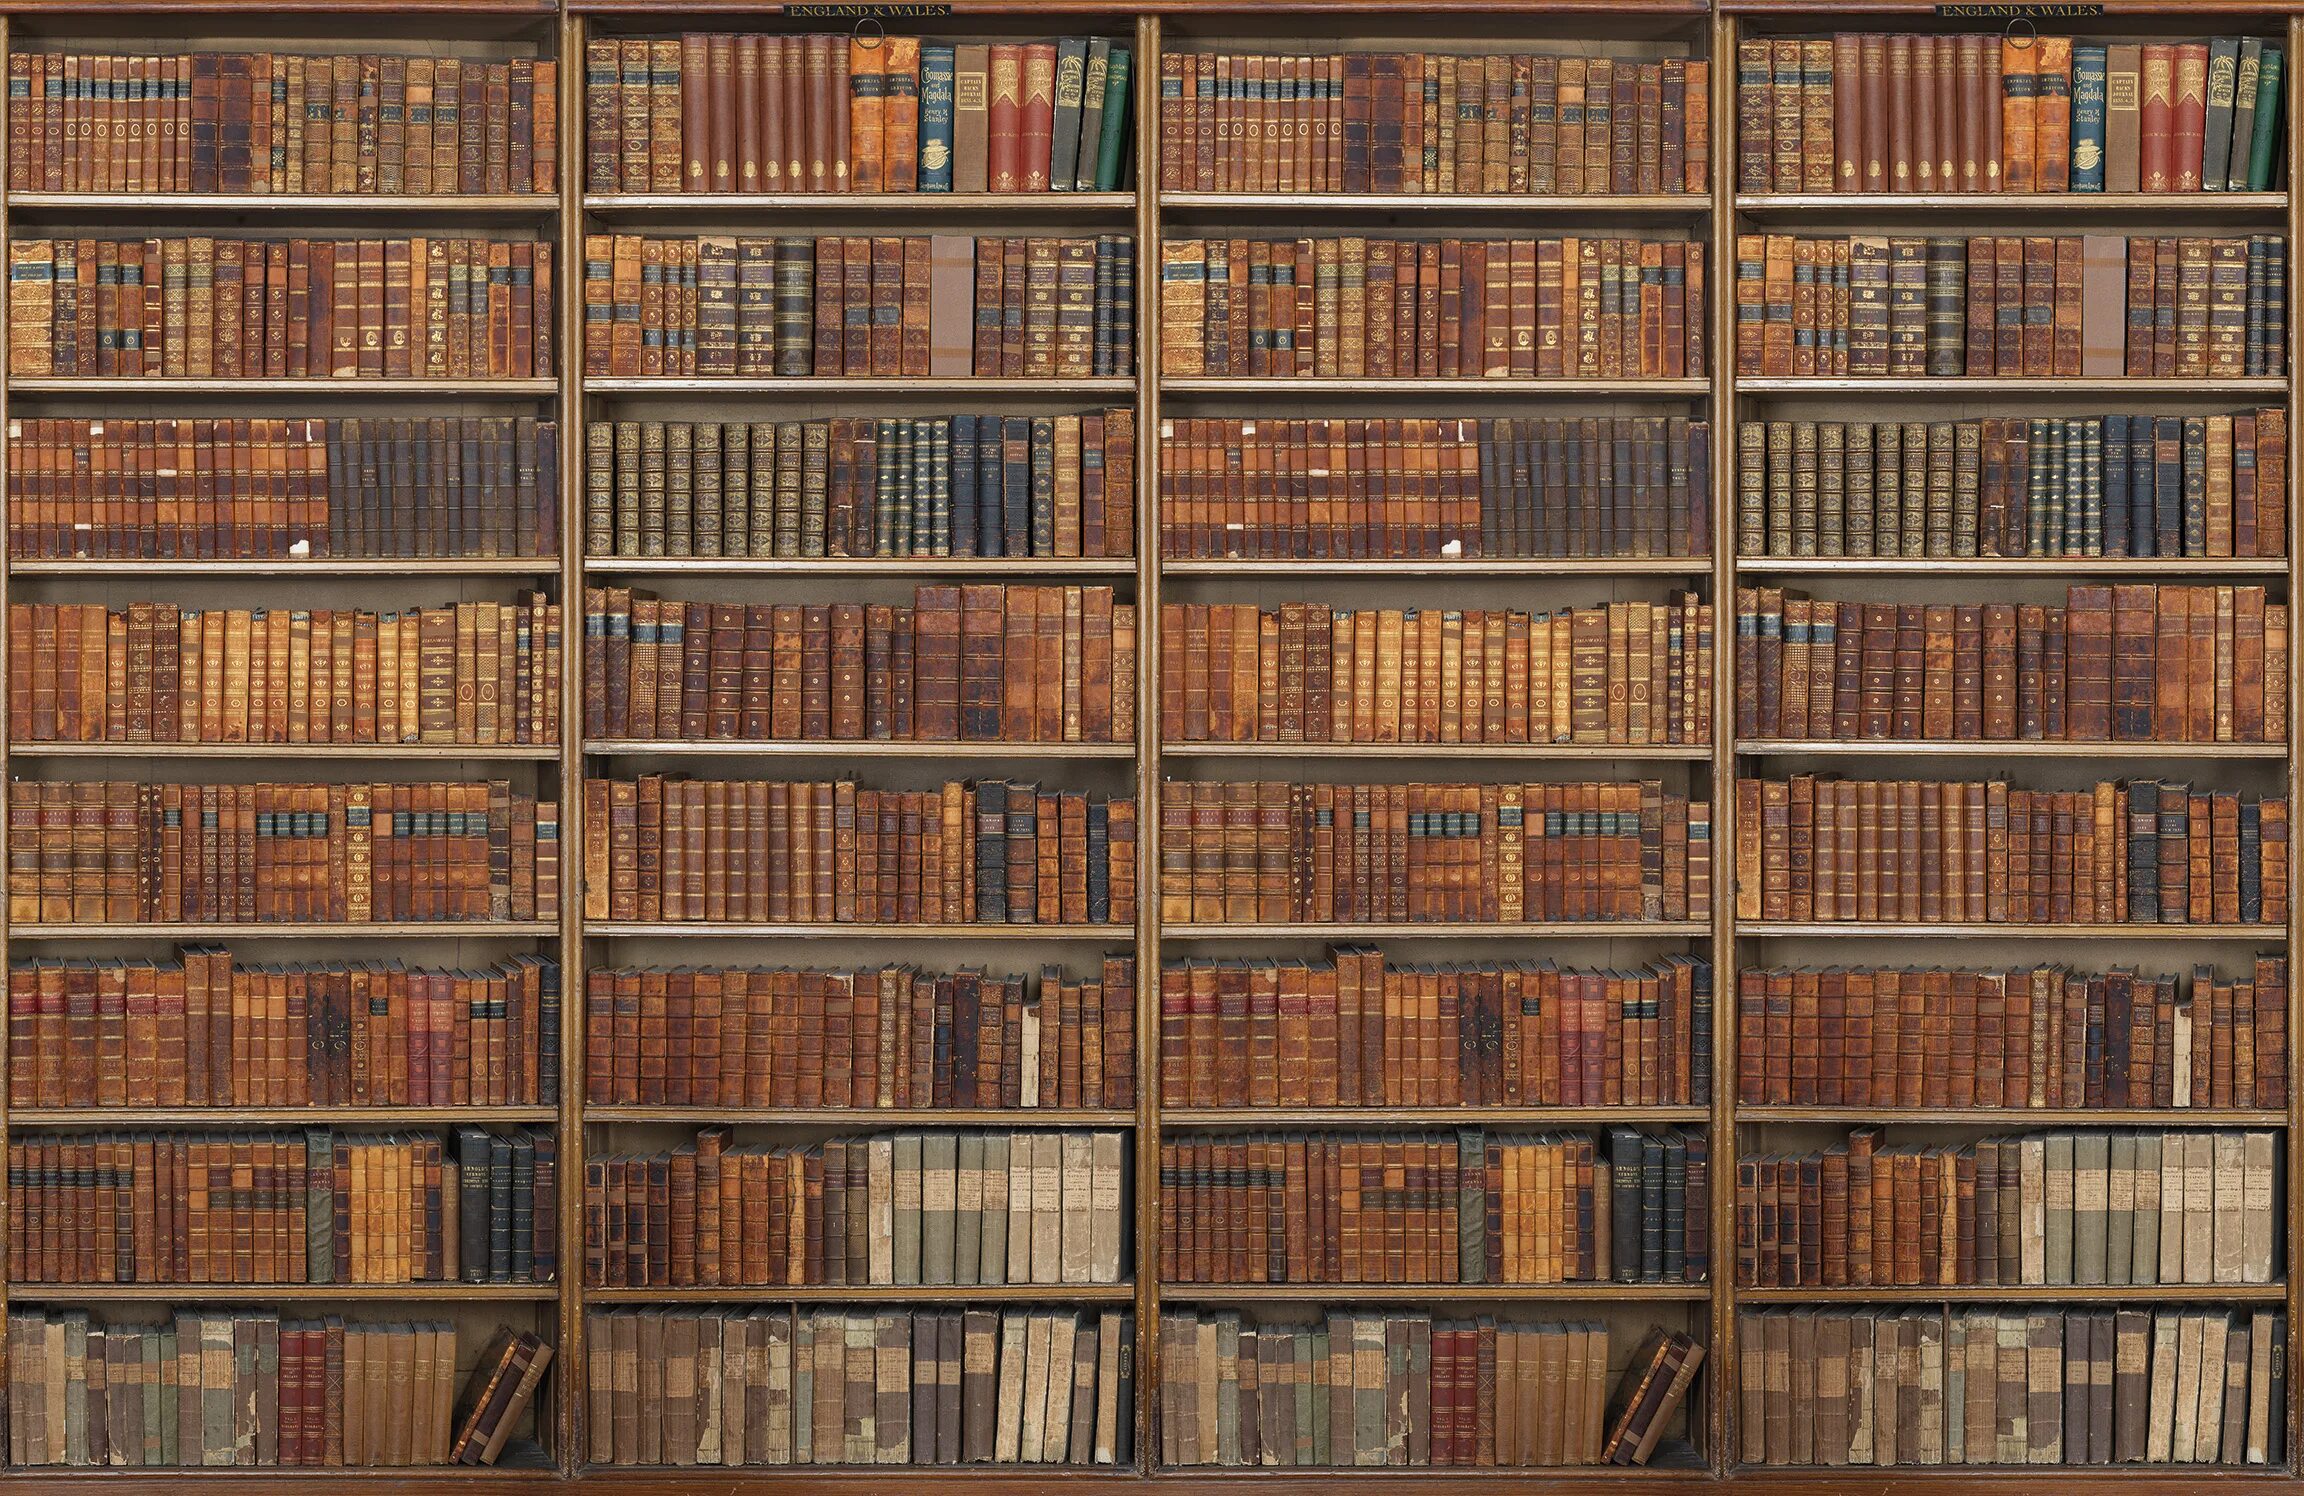 Compiled library. Старинный шкаф с книгами. Старинный стеллаж с книгами. Старинные книжные полки. Текстура шкафа с книгами.